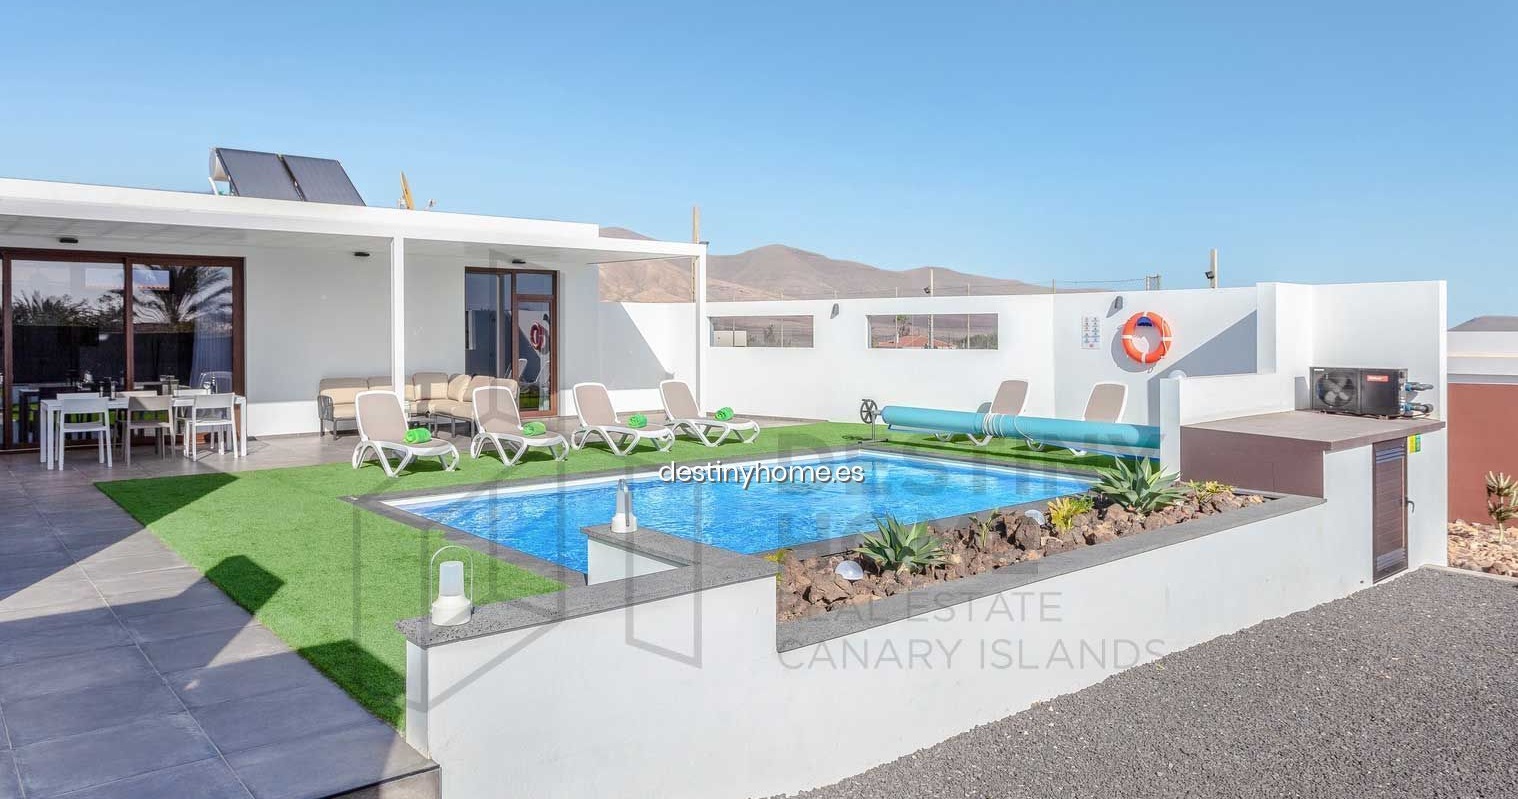 Quelles taxes dois-je payer lors de la vente d’une propriété à Fuerteventura ?